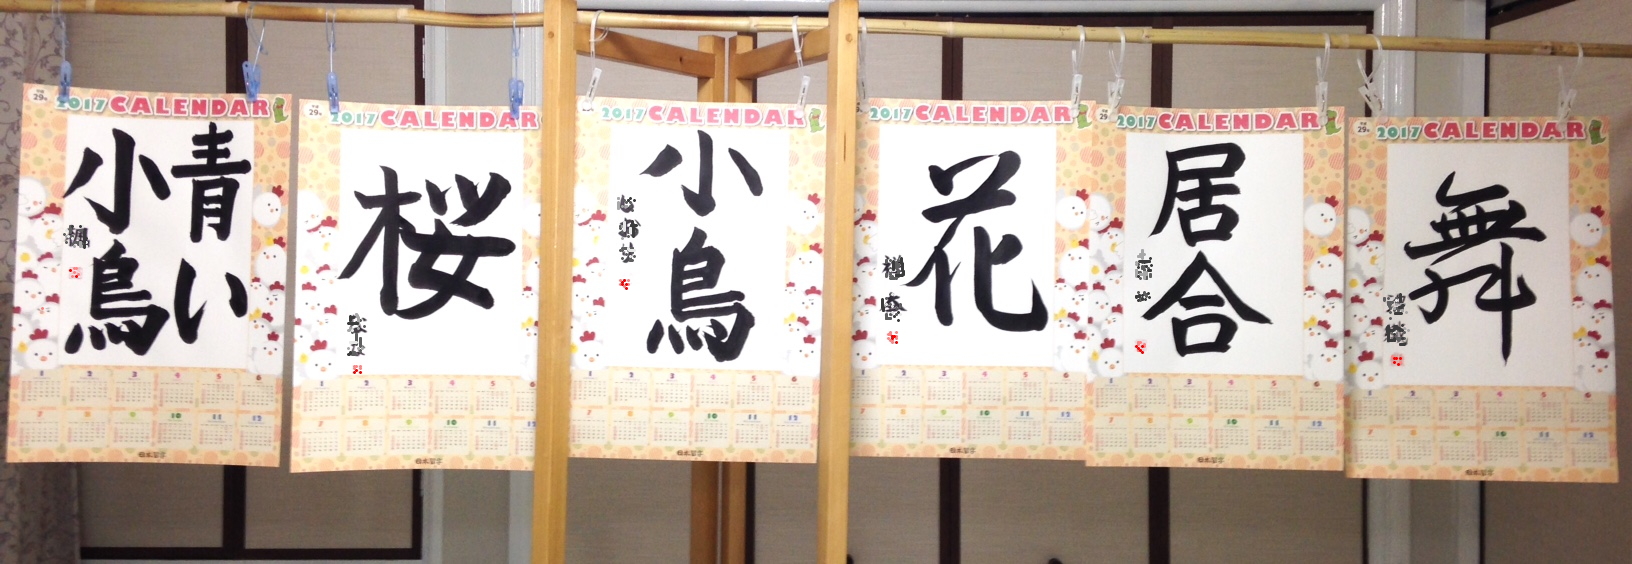 日本習字 東町教室 カレンダー作成